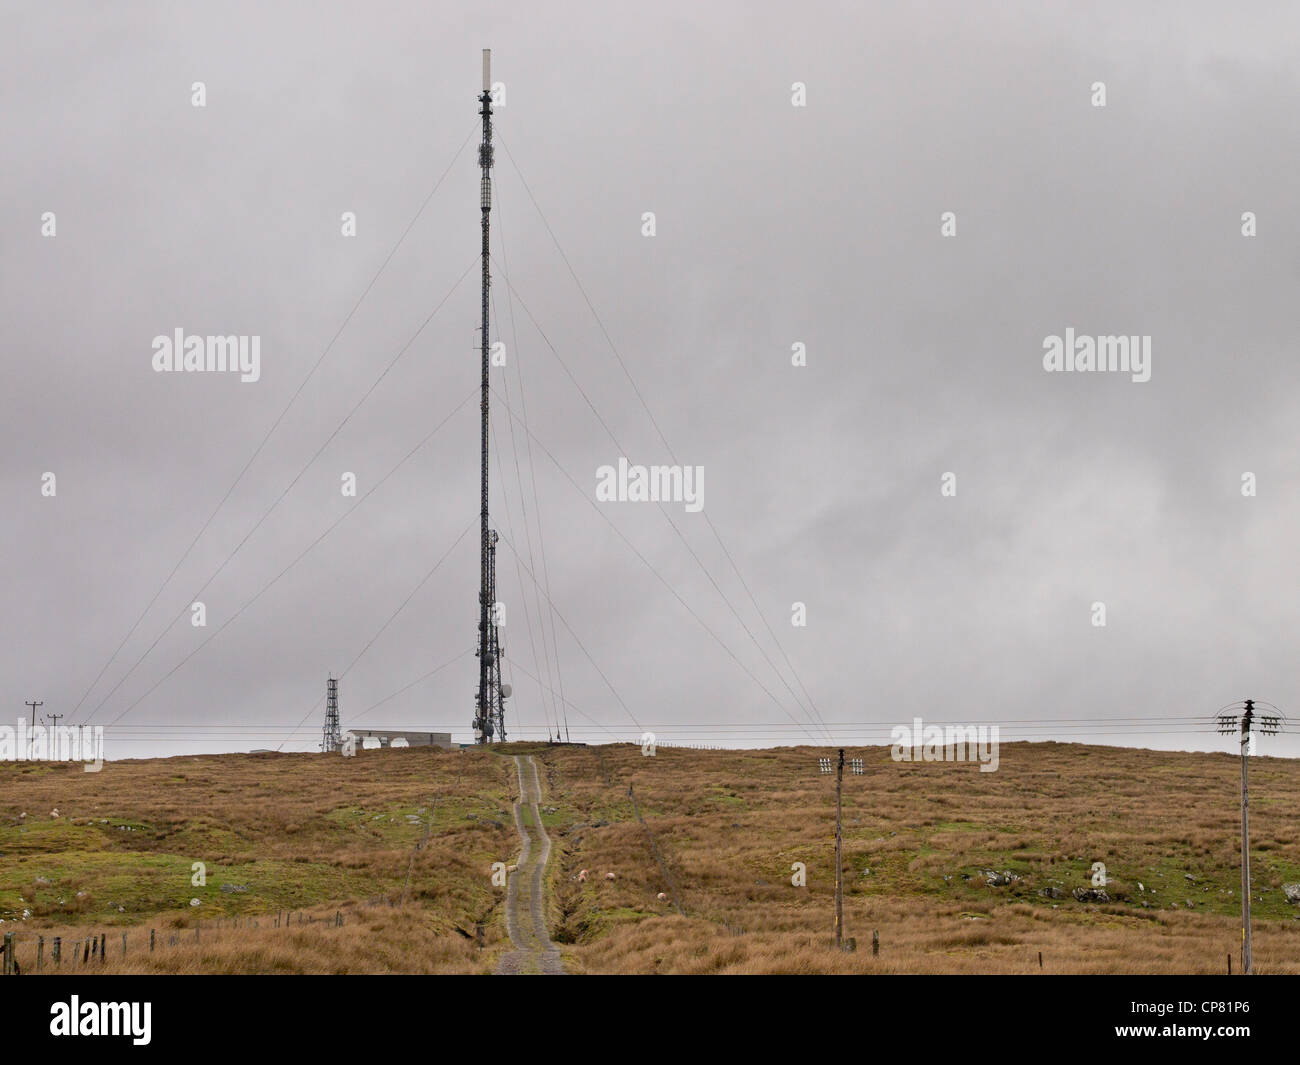 Eitshal Communications Mast, Isle of Lewis Stock Photo